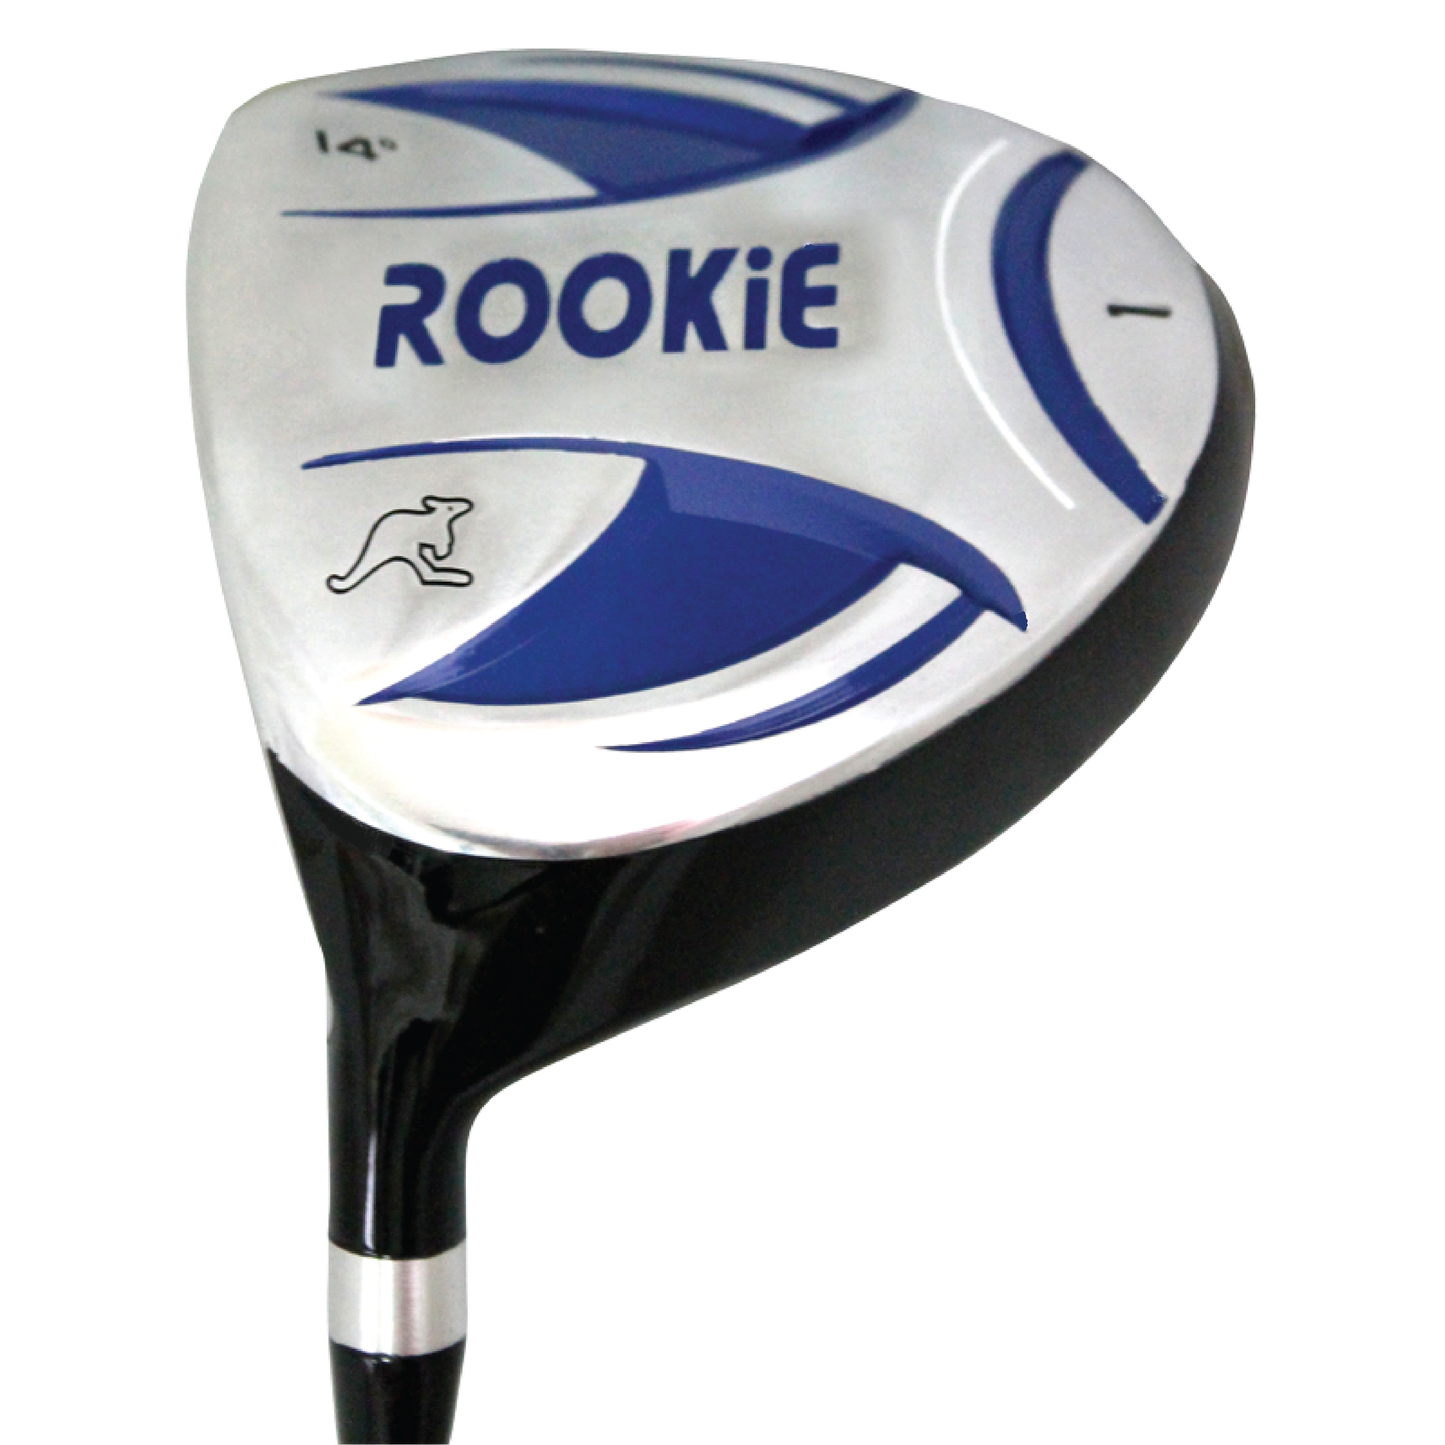 Rookie - Kids Golf Set LH - 7 Piece Blue 4 to 7 YRS